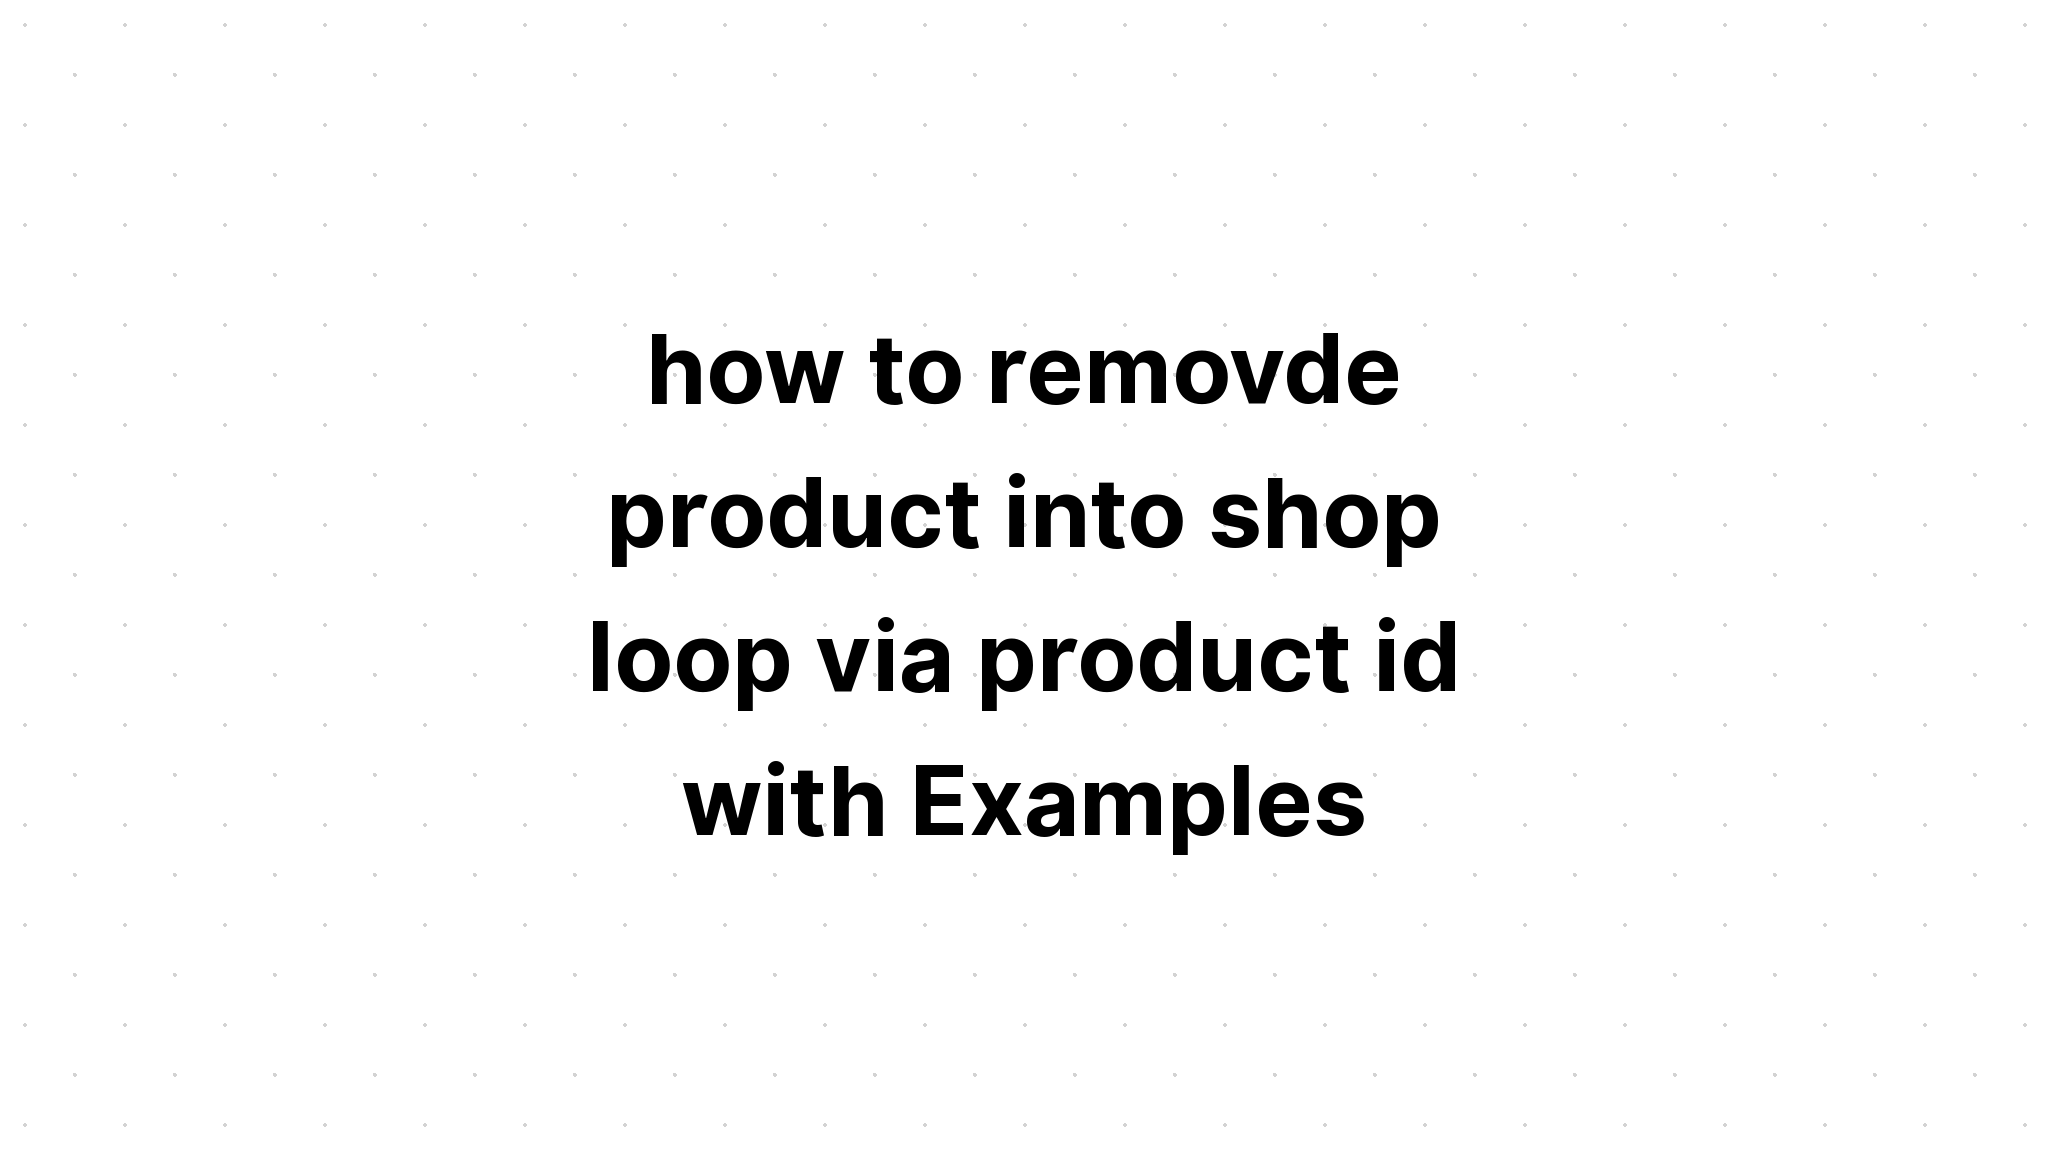 cách xóa sản phẩm vào vòng lặp cửa hàng qua id sản phẩm với Ví dụ